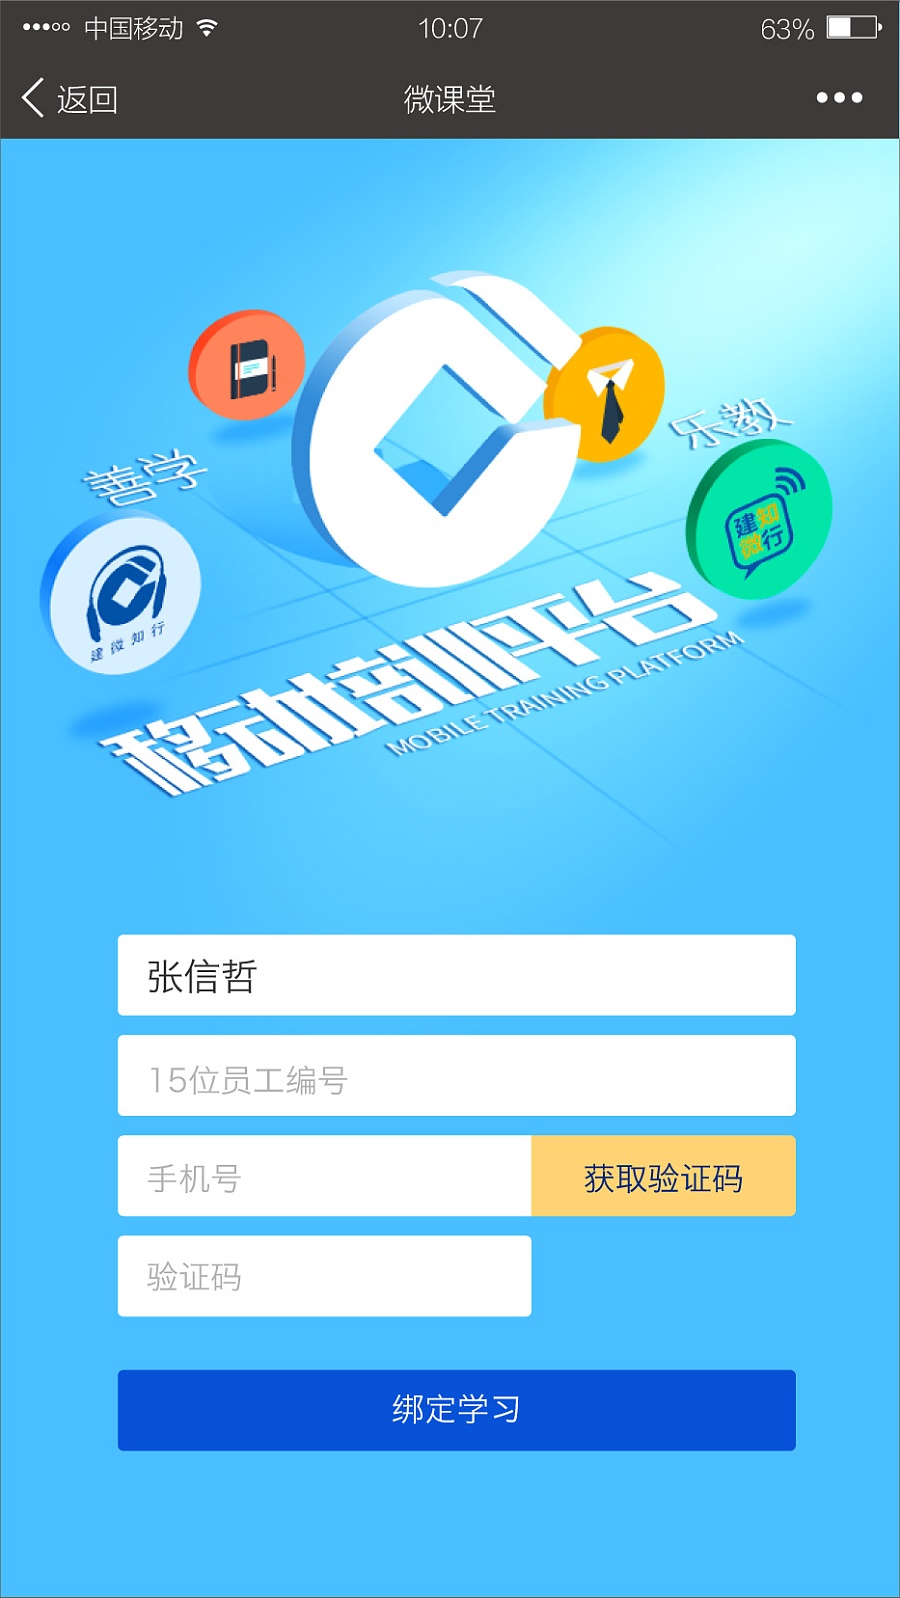 重庆建行微课堂基于微信的APP|移动设备\/APP